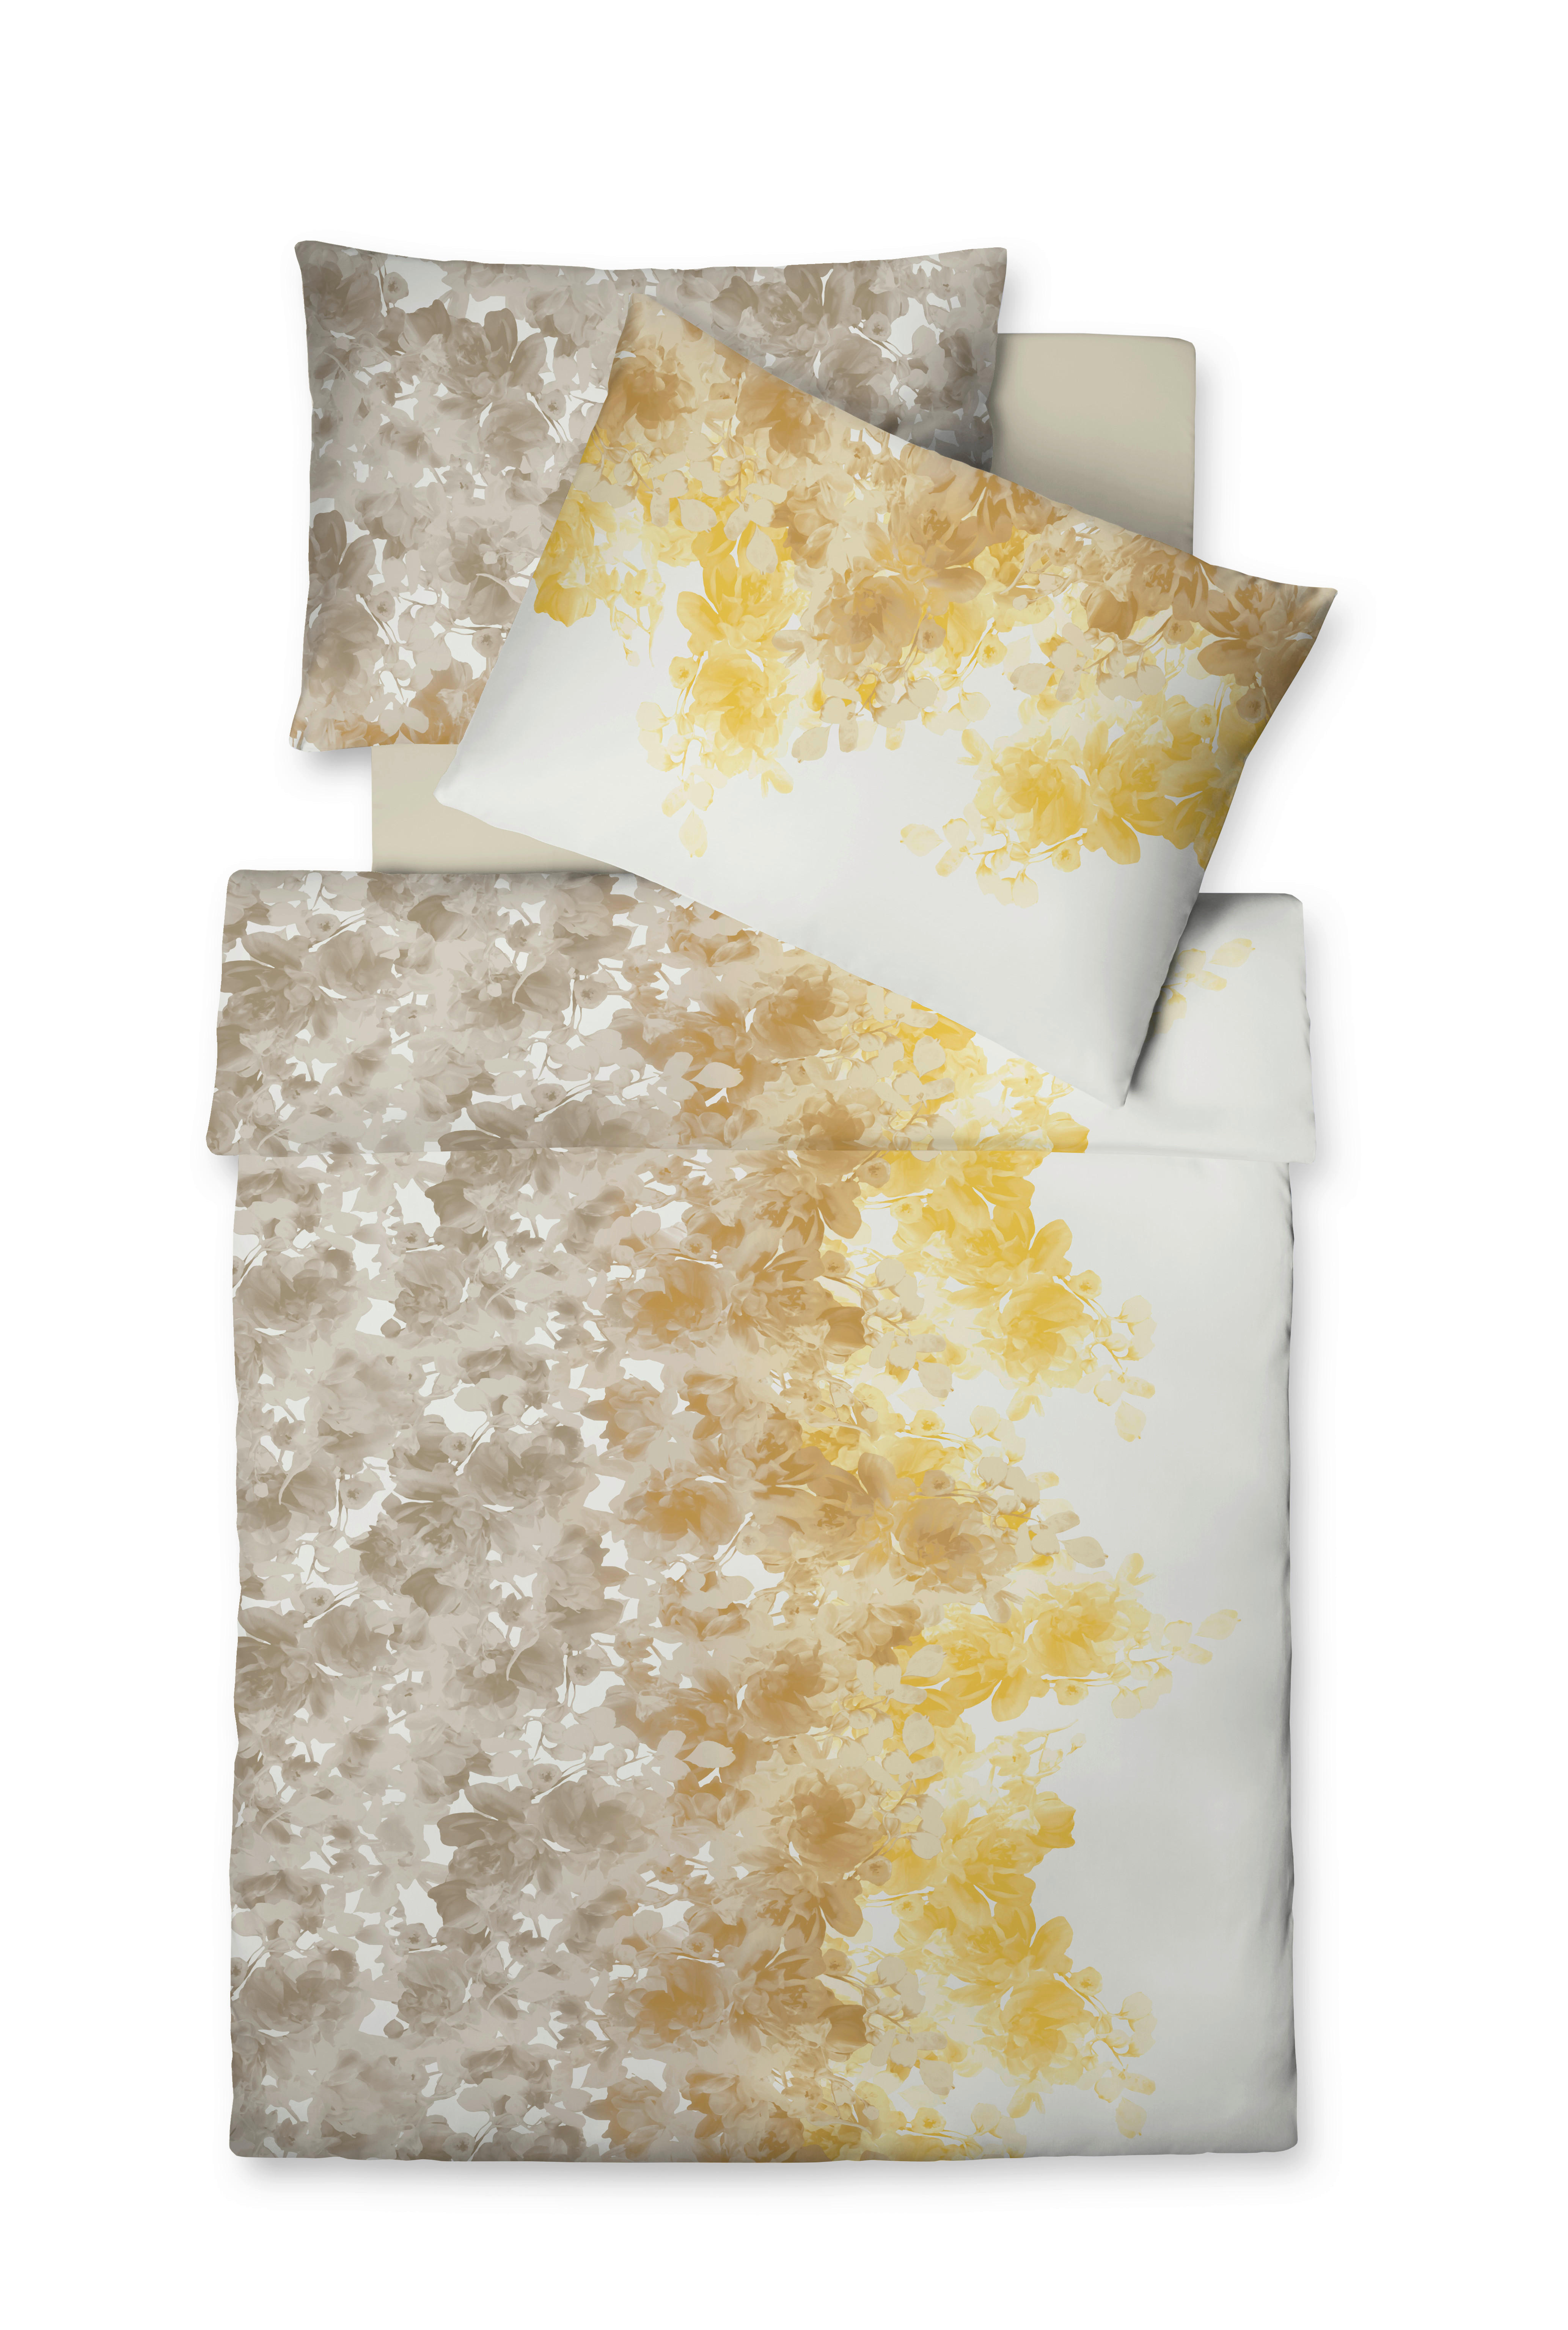 POVLEČENÍ, makosatén, žlutá, bílá, šedohnědá, 140/200 cm - bílá/žlutá, Konvenční, textil (140/200cm) - Fleuresse